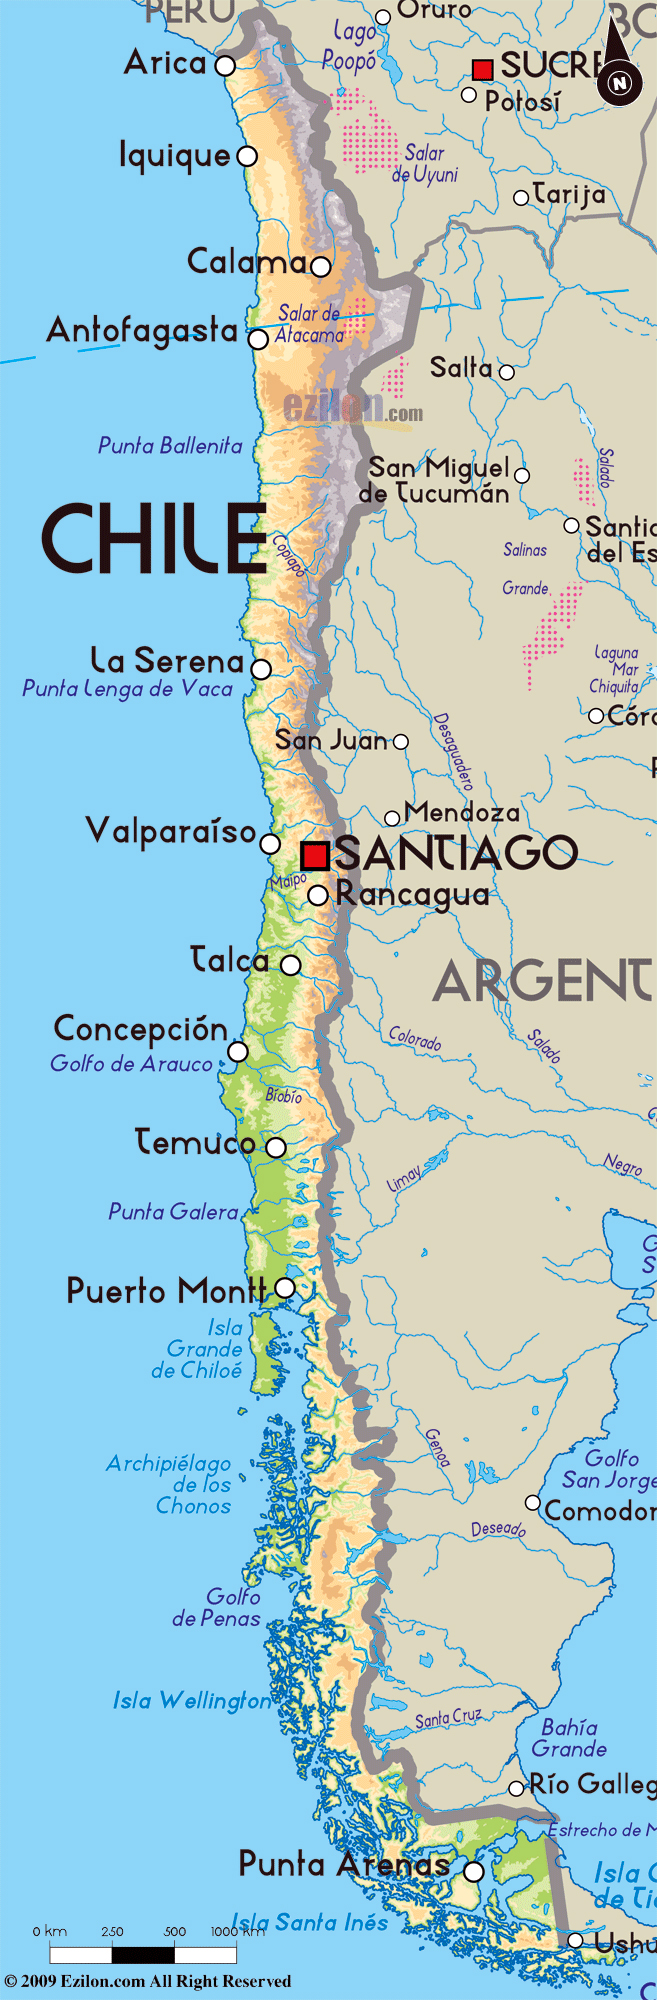 Detallado mapa físico de Chile con principales ciudades | Chile